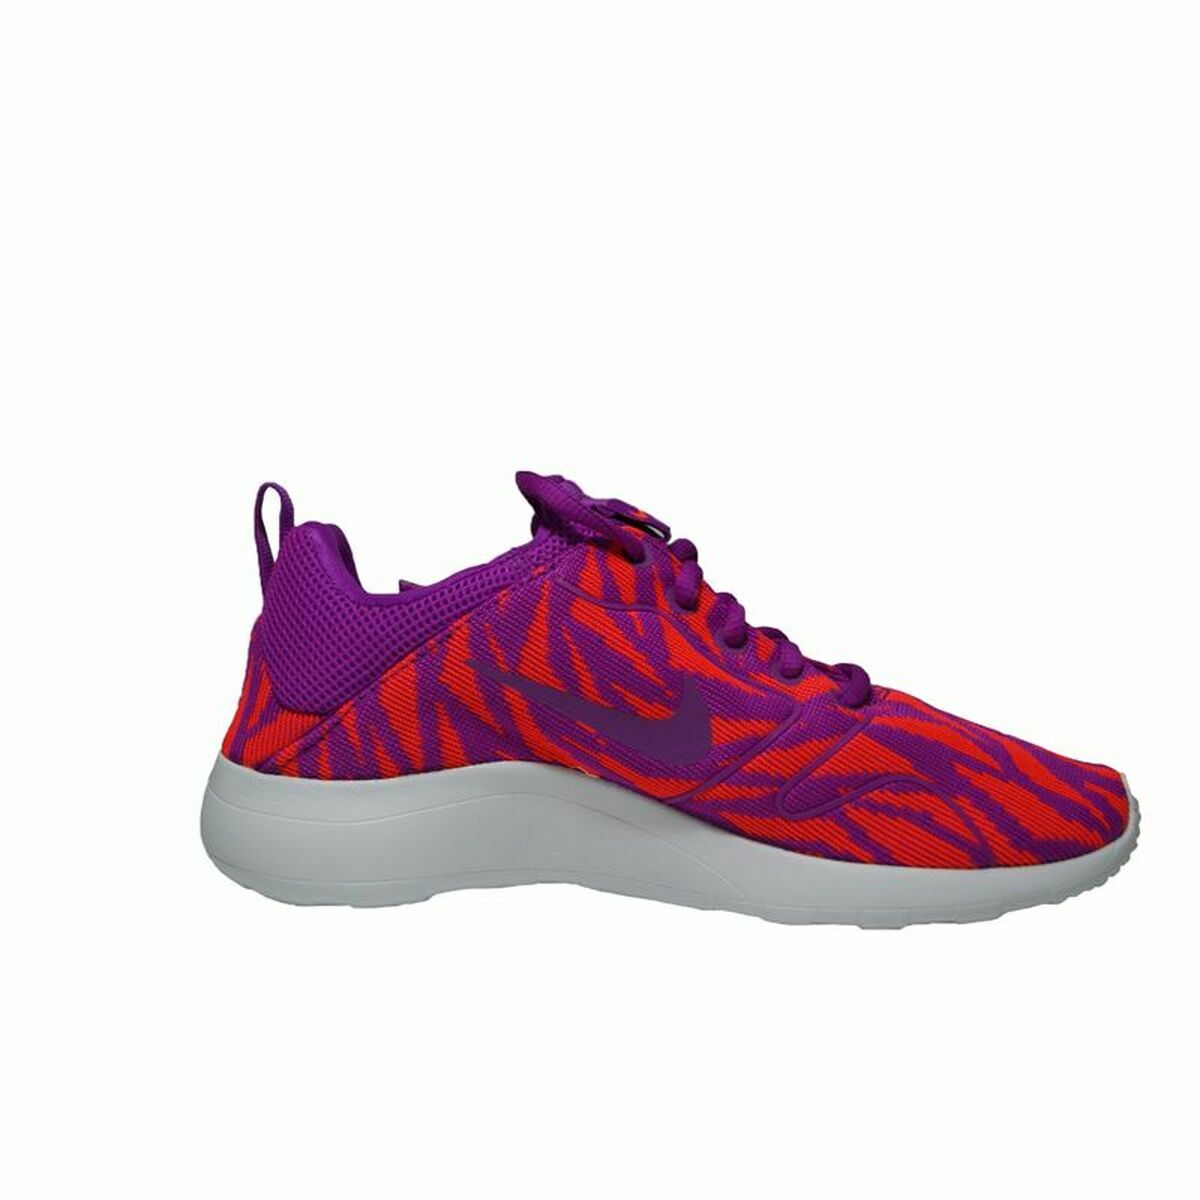 Chaussures de sport pour femme Nike Kaishi 2.0 Rouge Violet